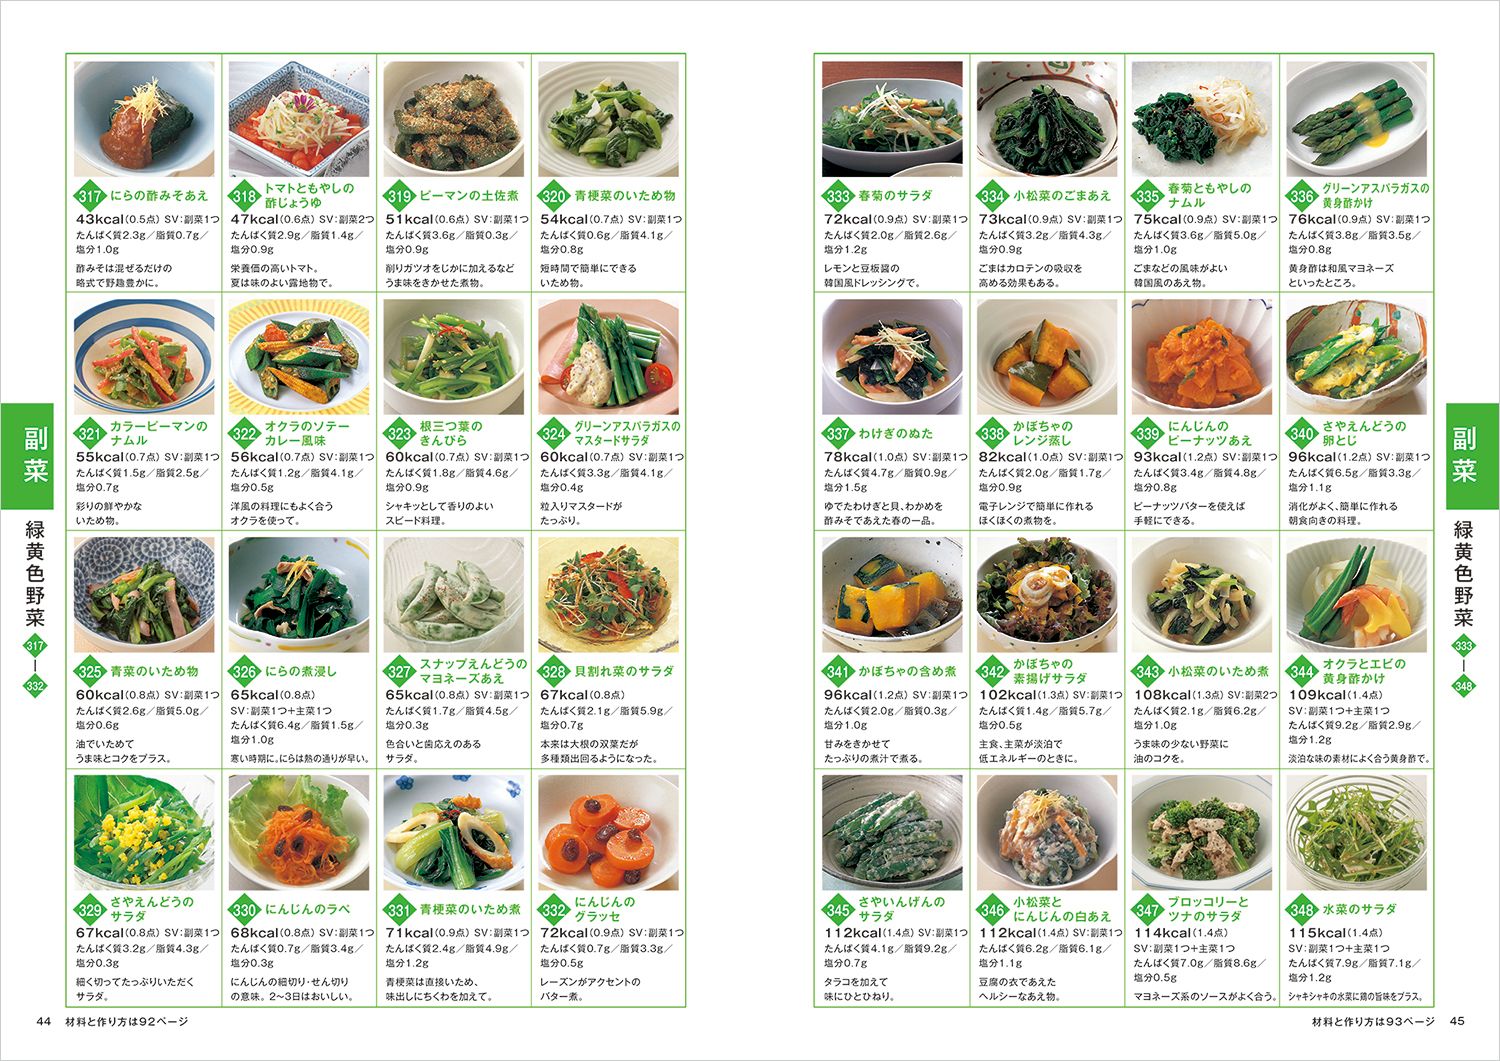 楽天ブックス 食事コーディネートのための主食 主菜 副菜料理成分表 第4版 針谷 順子 本